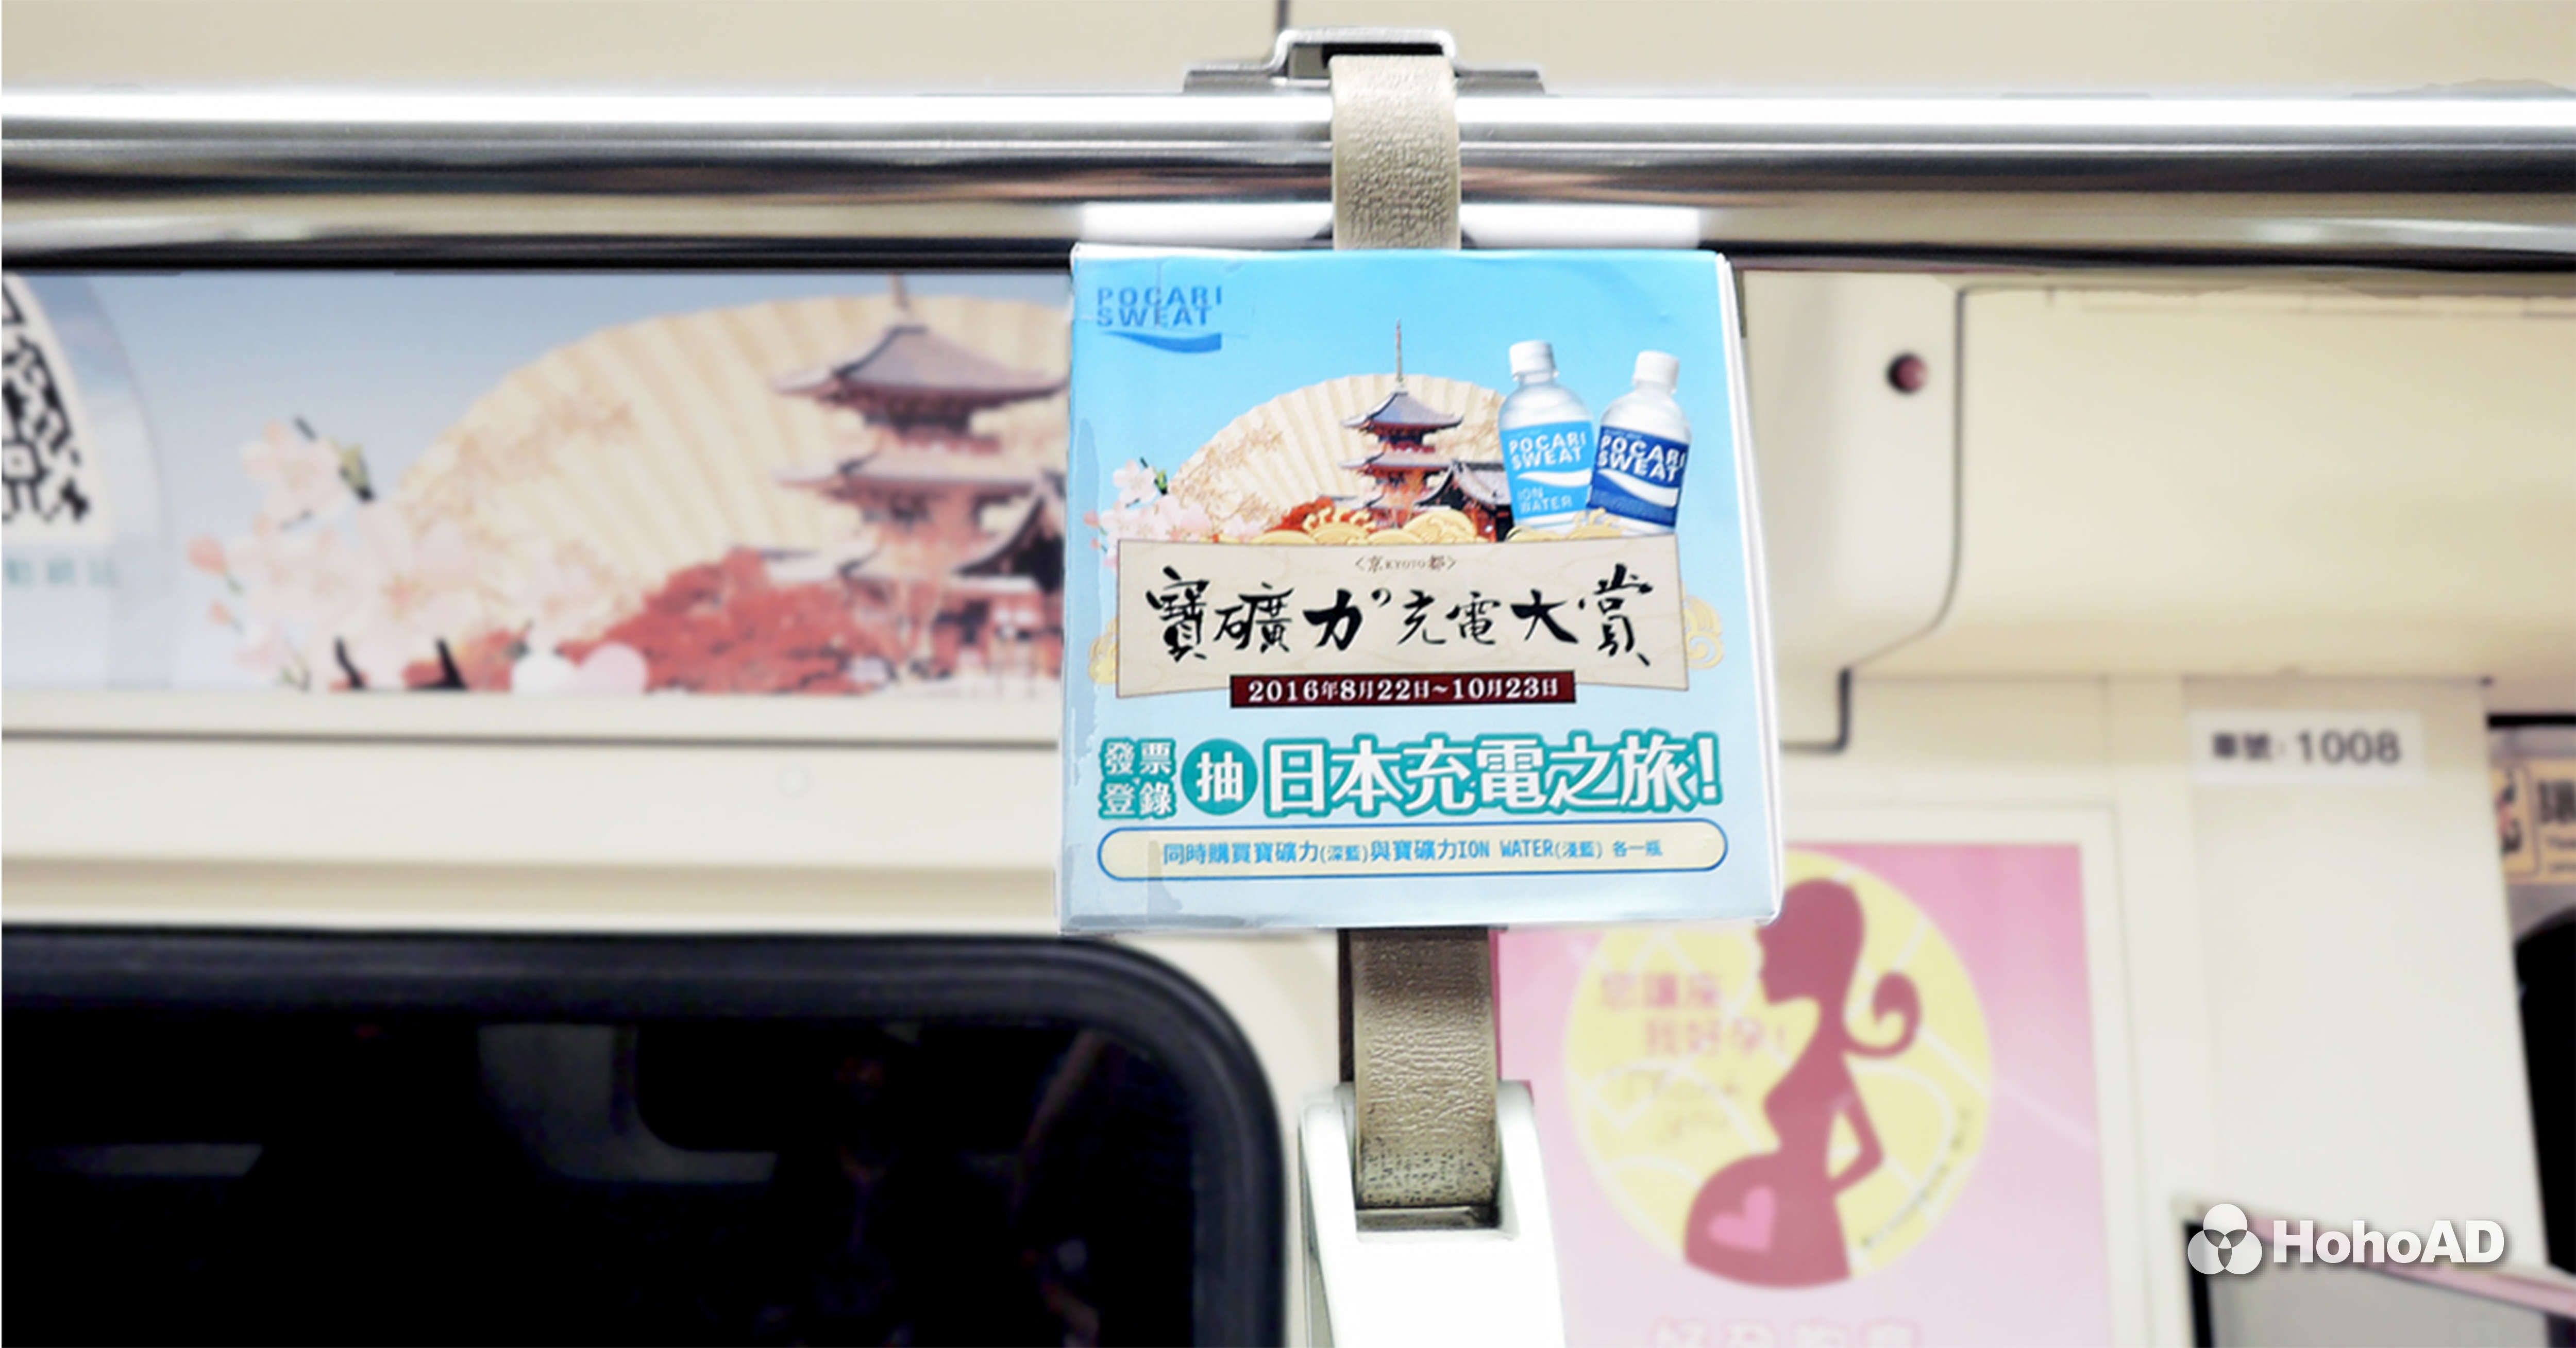 寶礦力水得利用捷運車廂廣告，宣傳贈送京都機票的抽獎活動｜合和國際 HohoAD